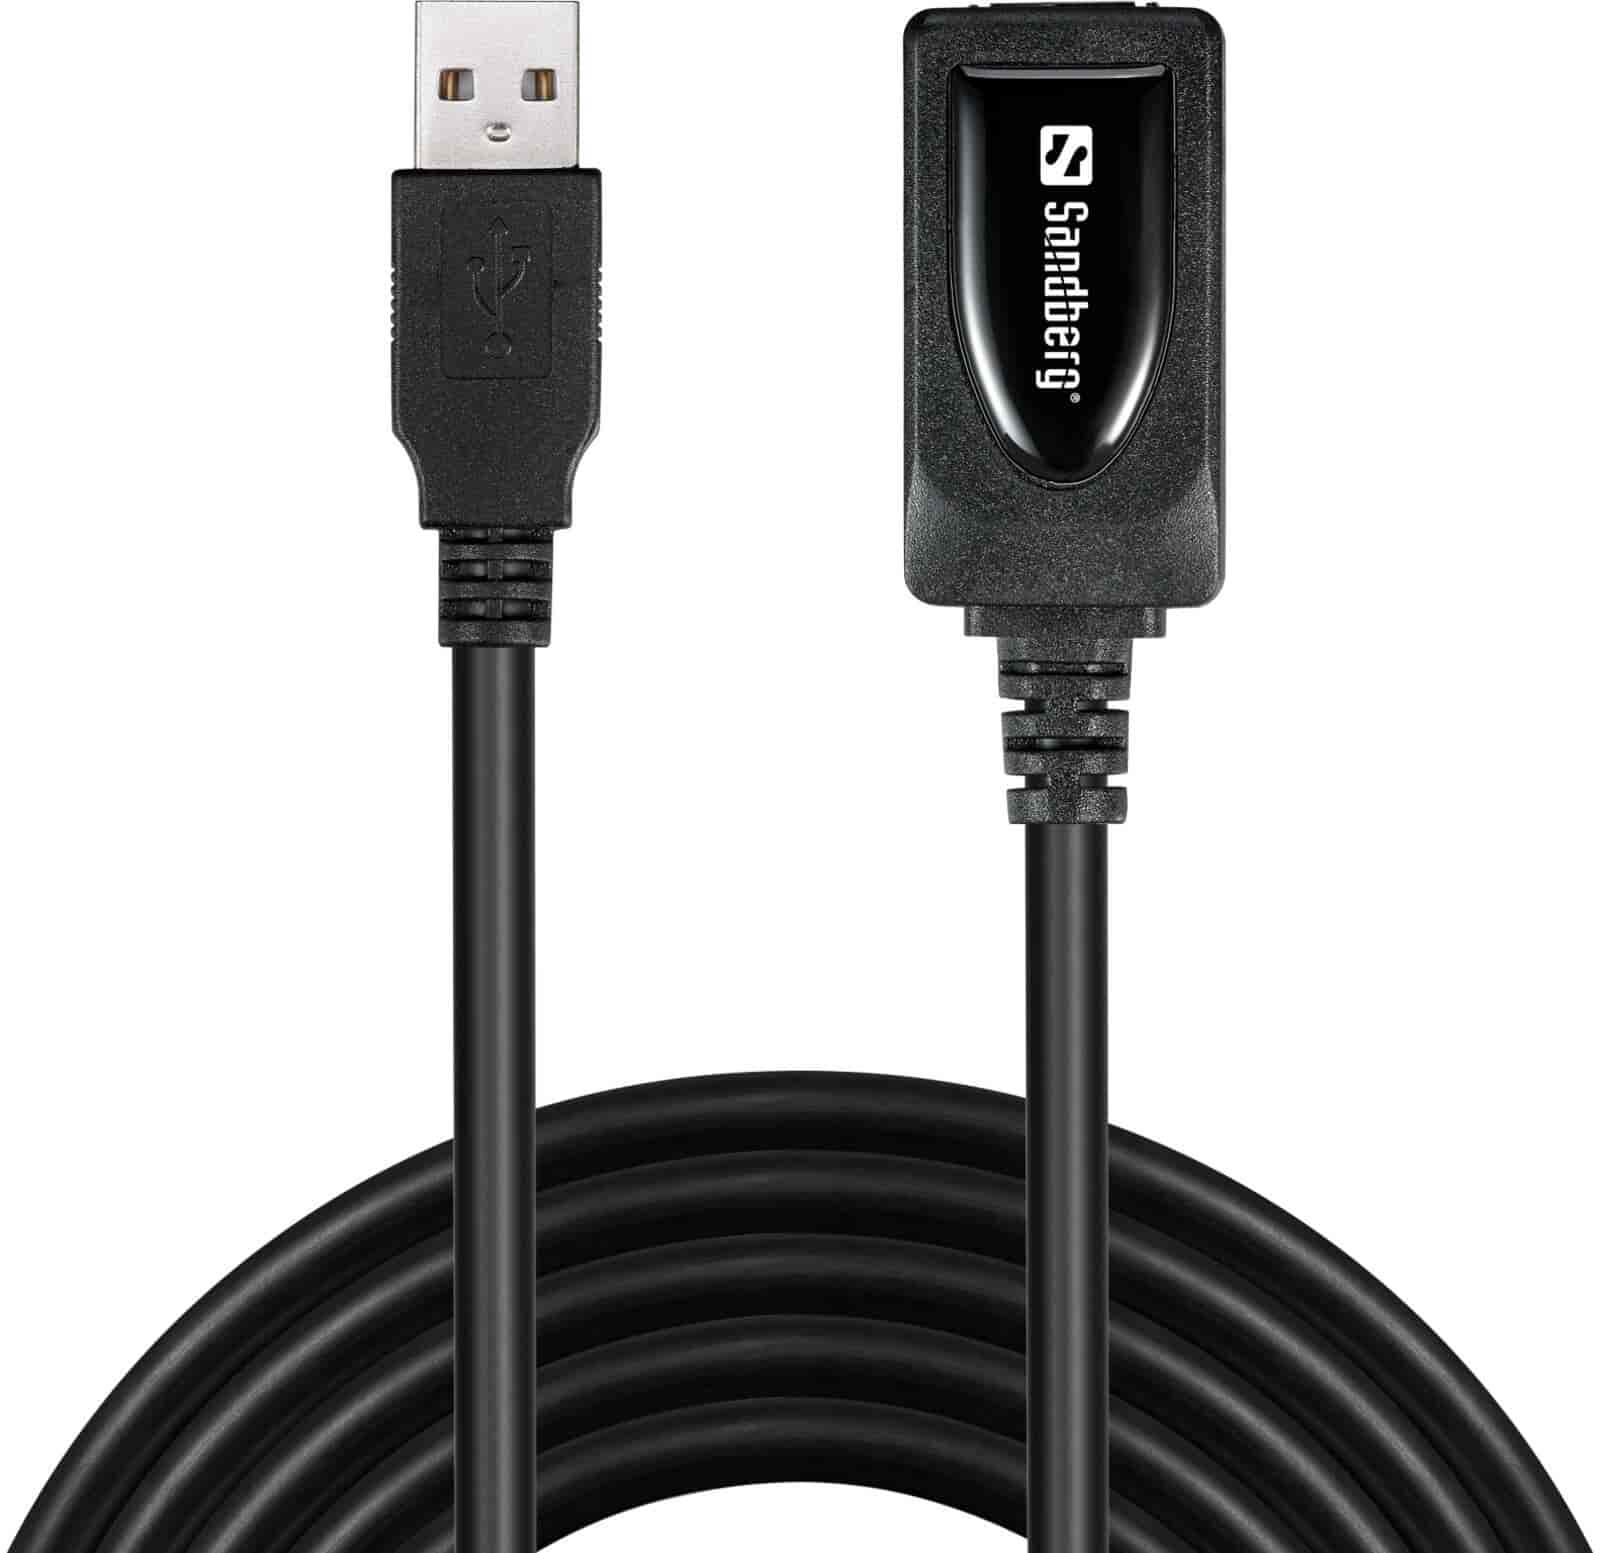 Forlæng USB kabel op til 10 meter med aktivt USB kabel